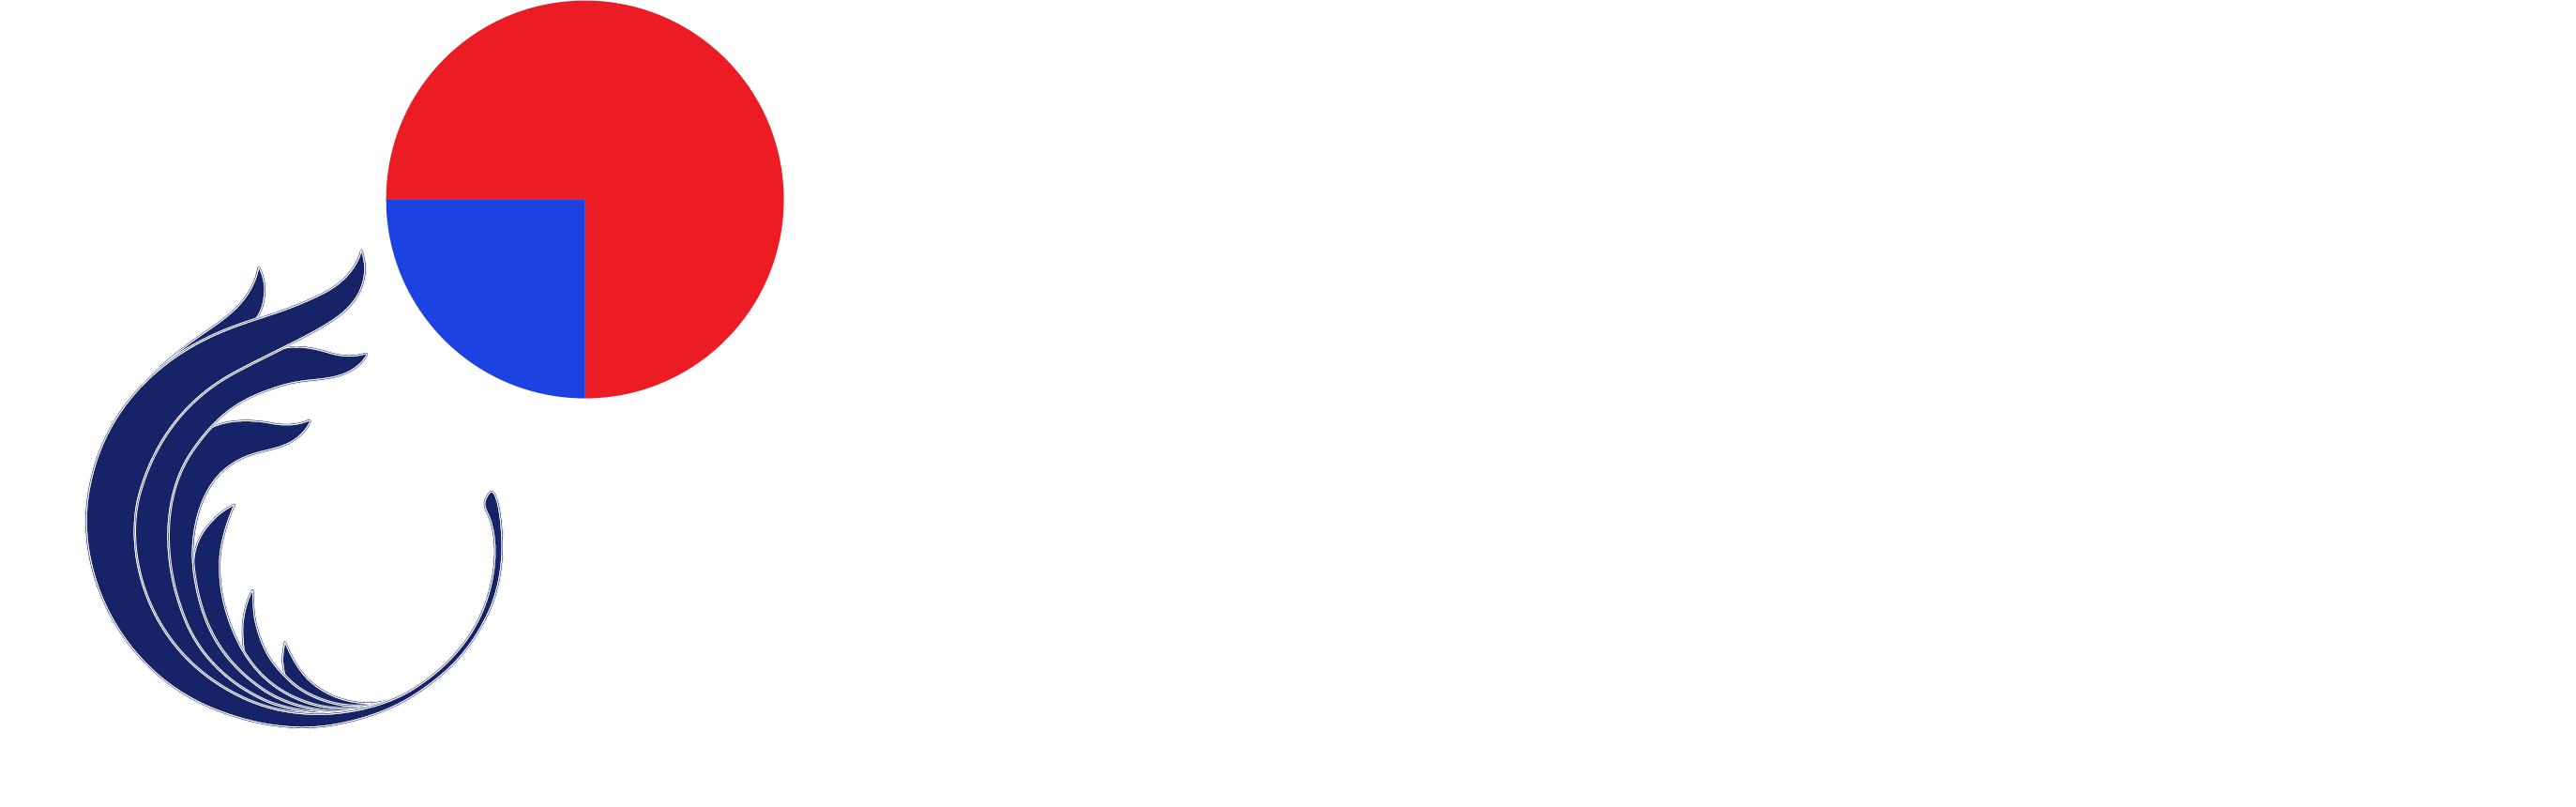 Fasanara Cardo SME-ESG Rating logo